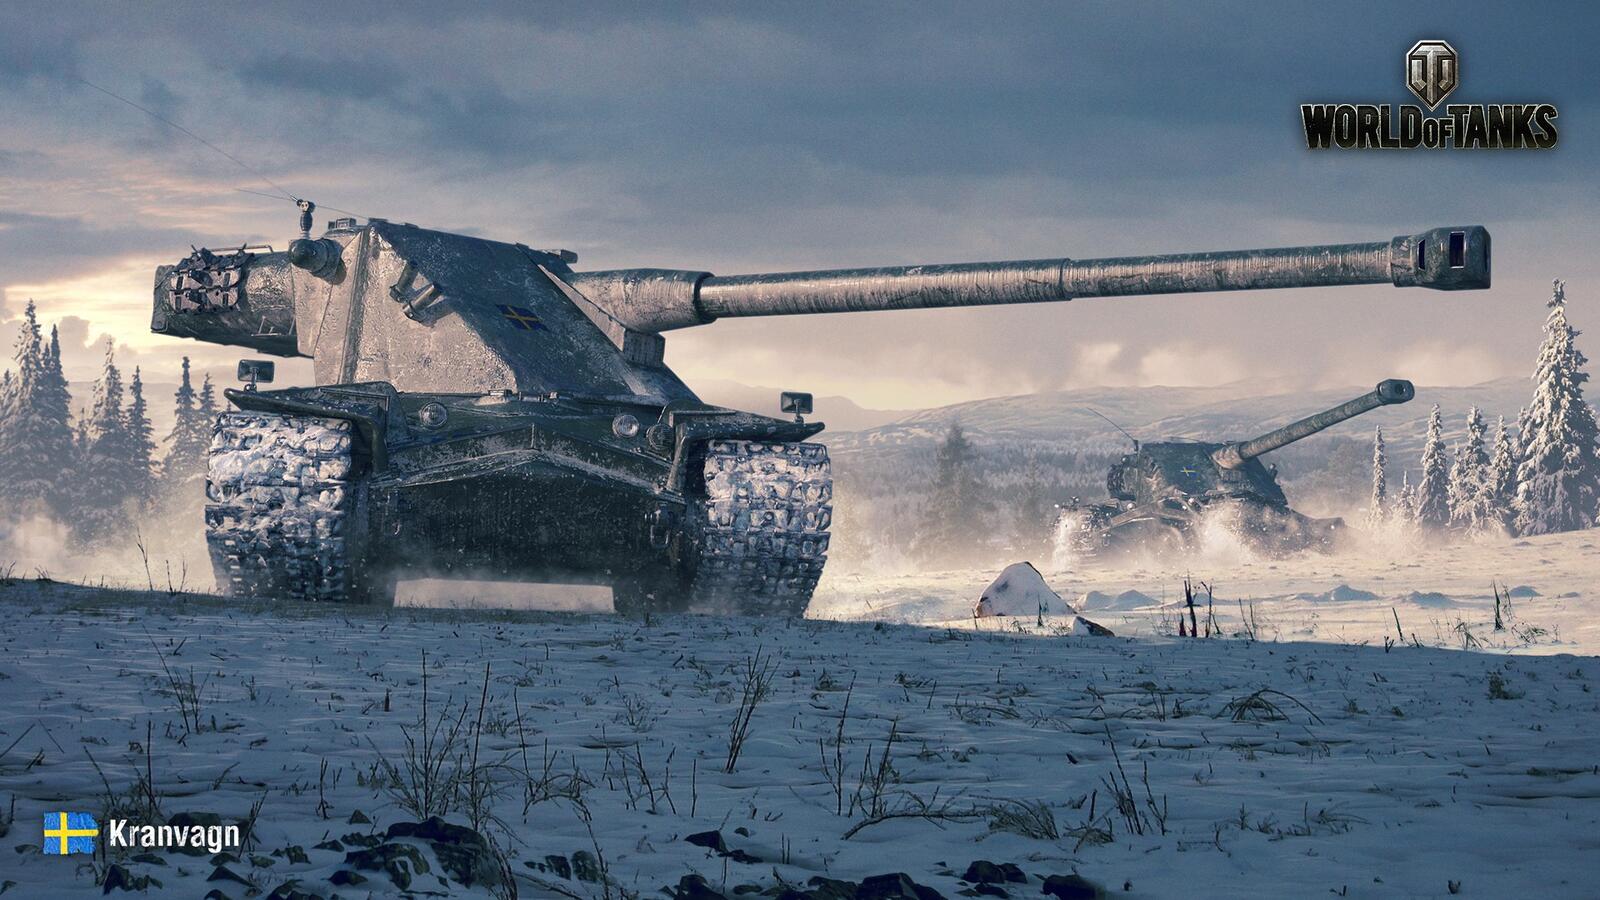 Бесплатное фото Kranvagn в World of Tanks